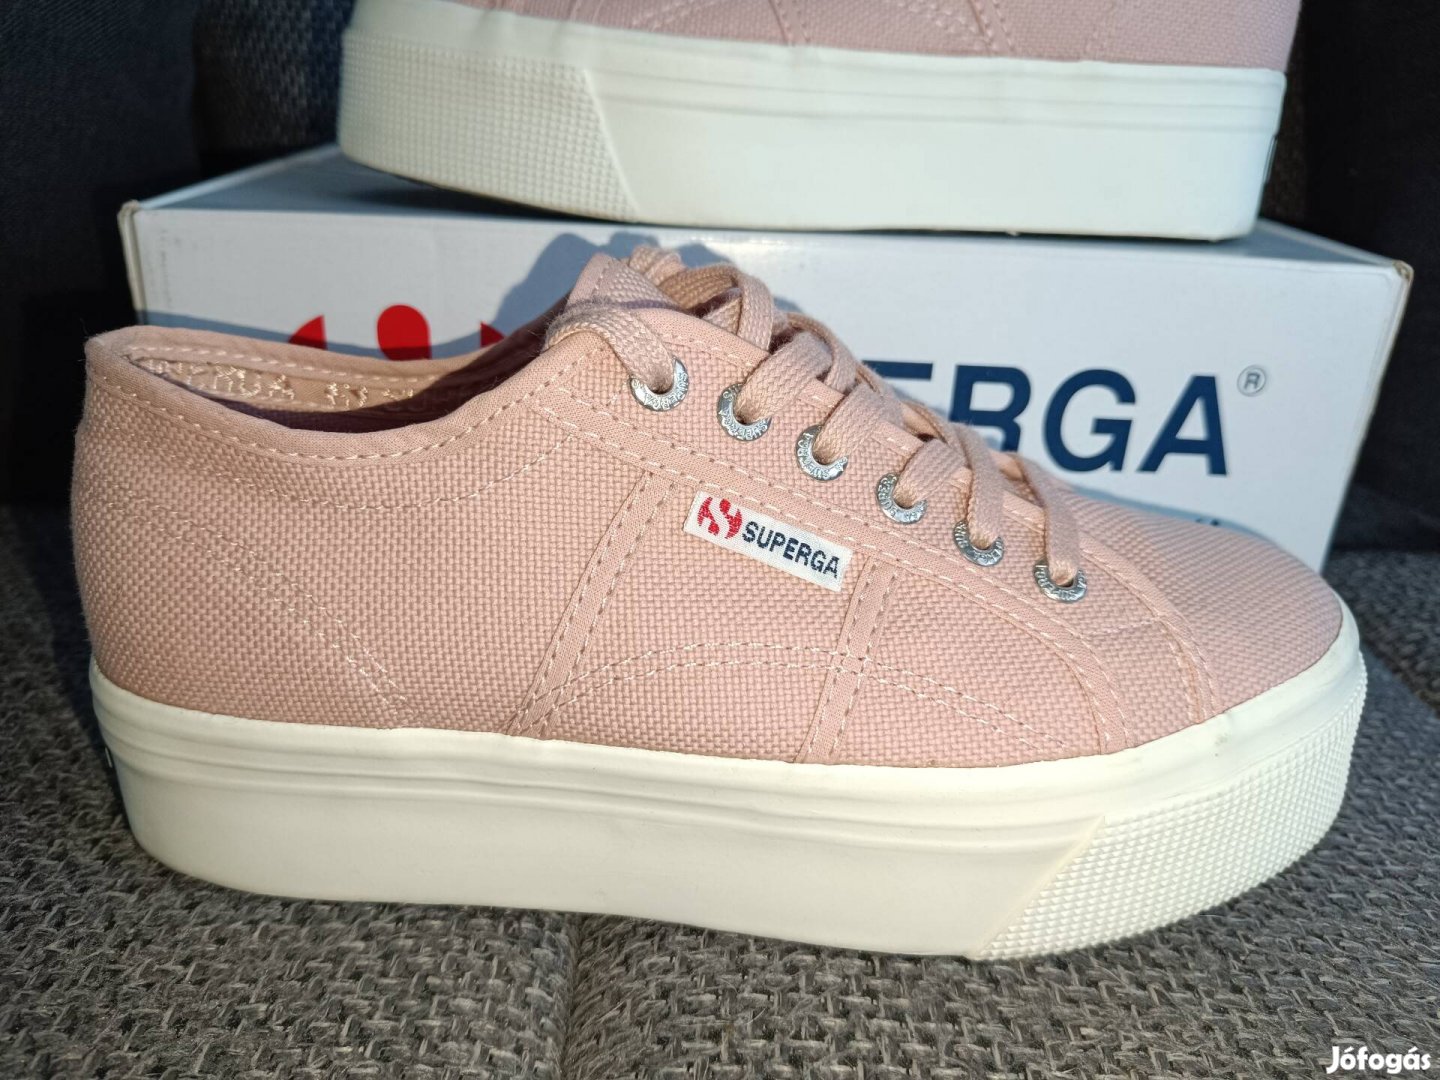 Supegra platformos 39es női cipő 